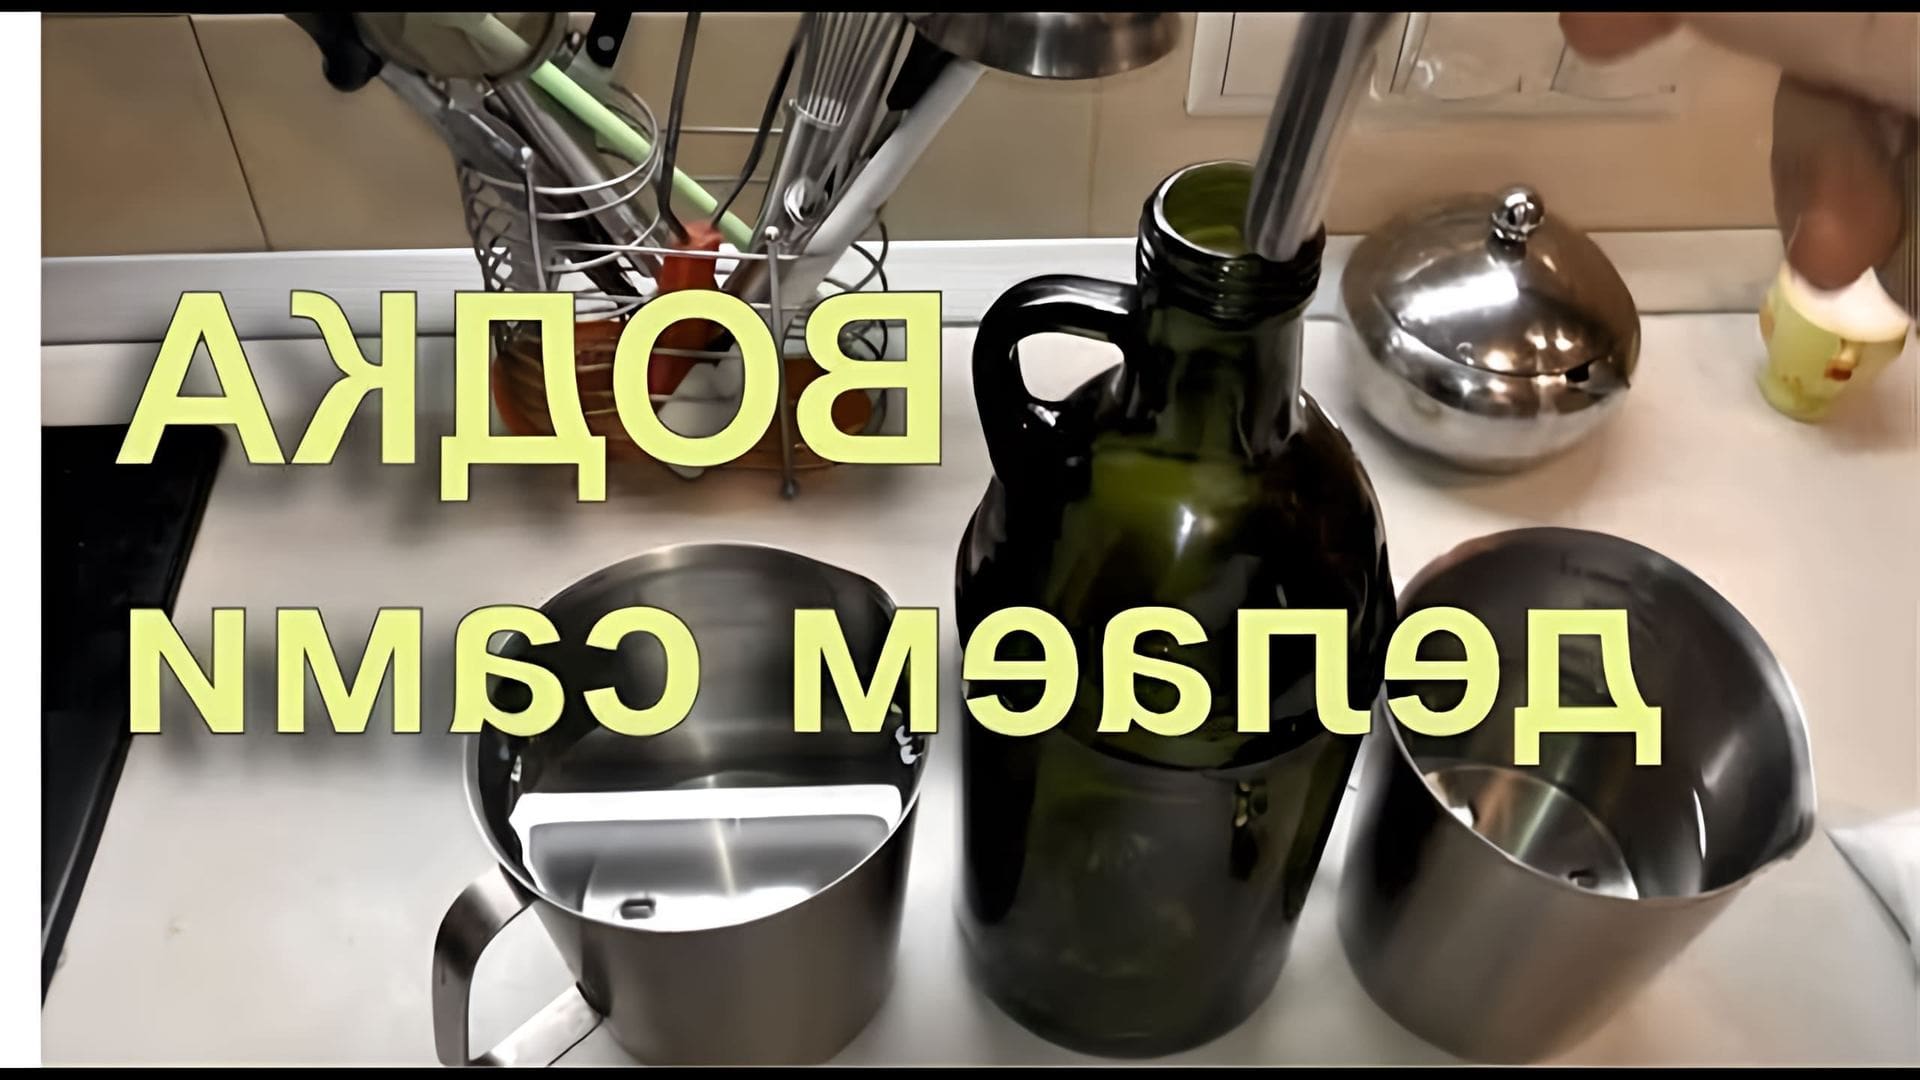 В данном видео демонстрируется рецепт приготовления водки в домашних условиях